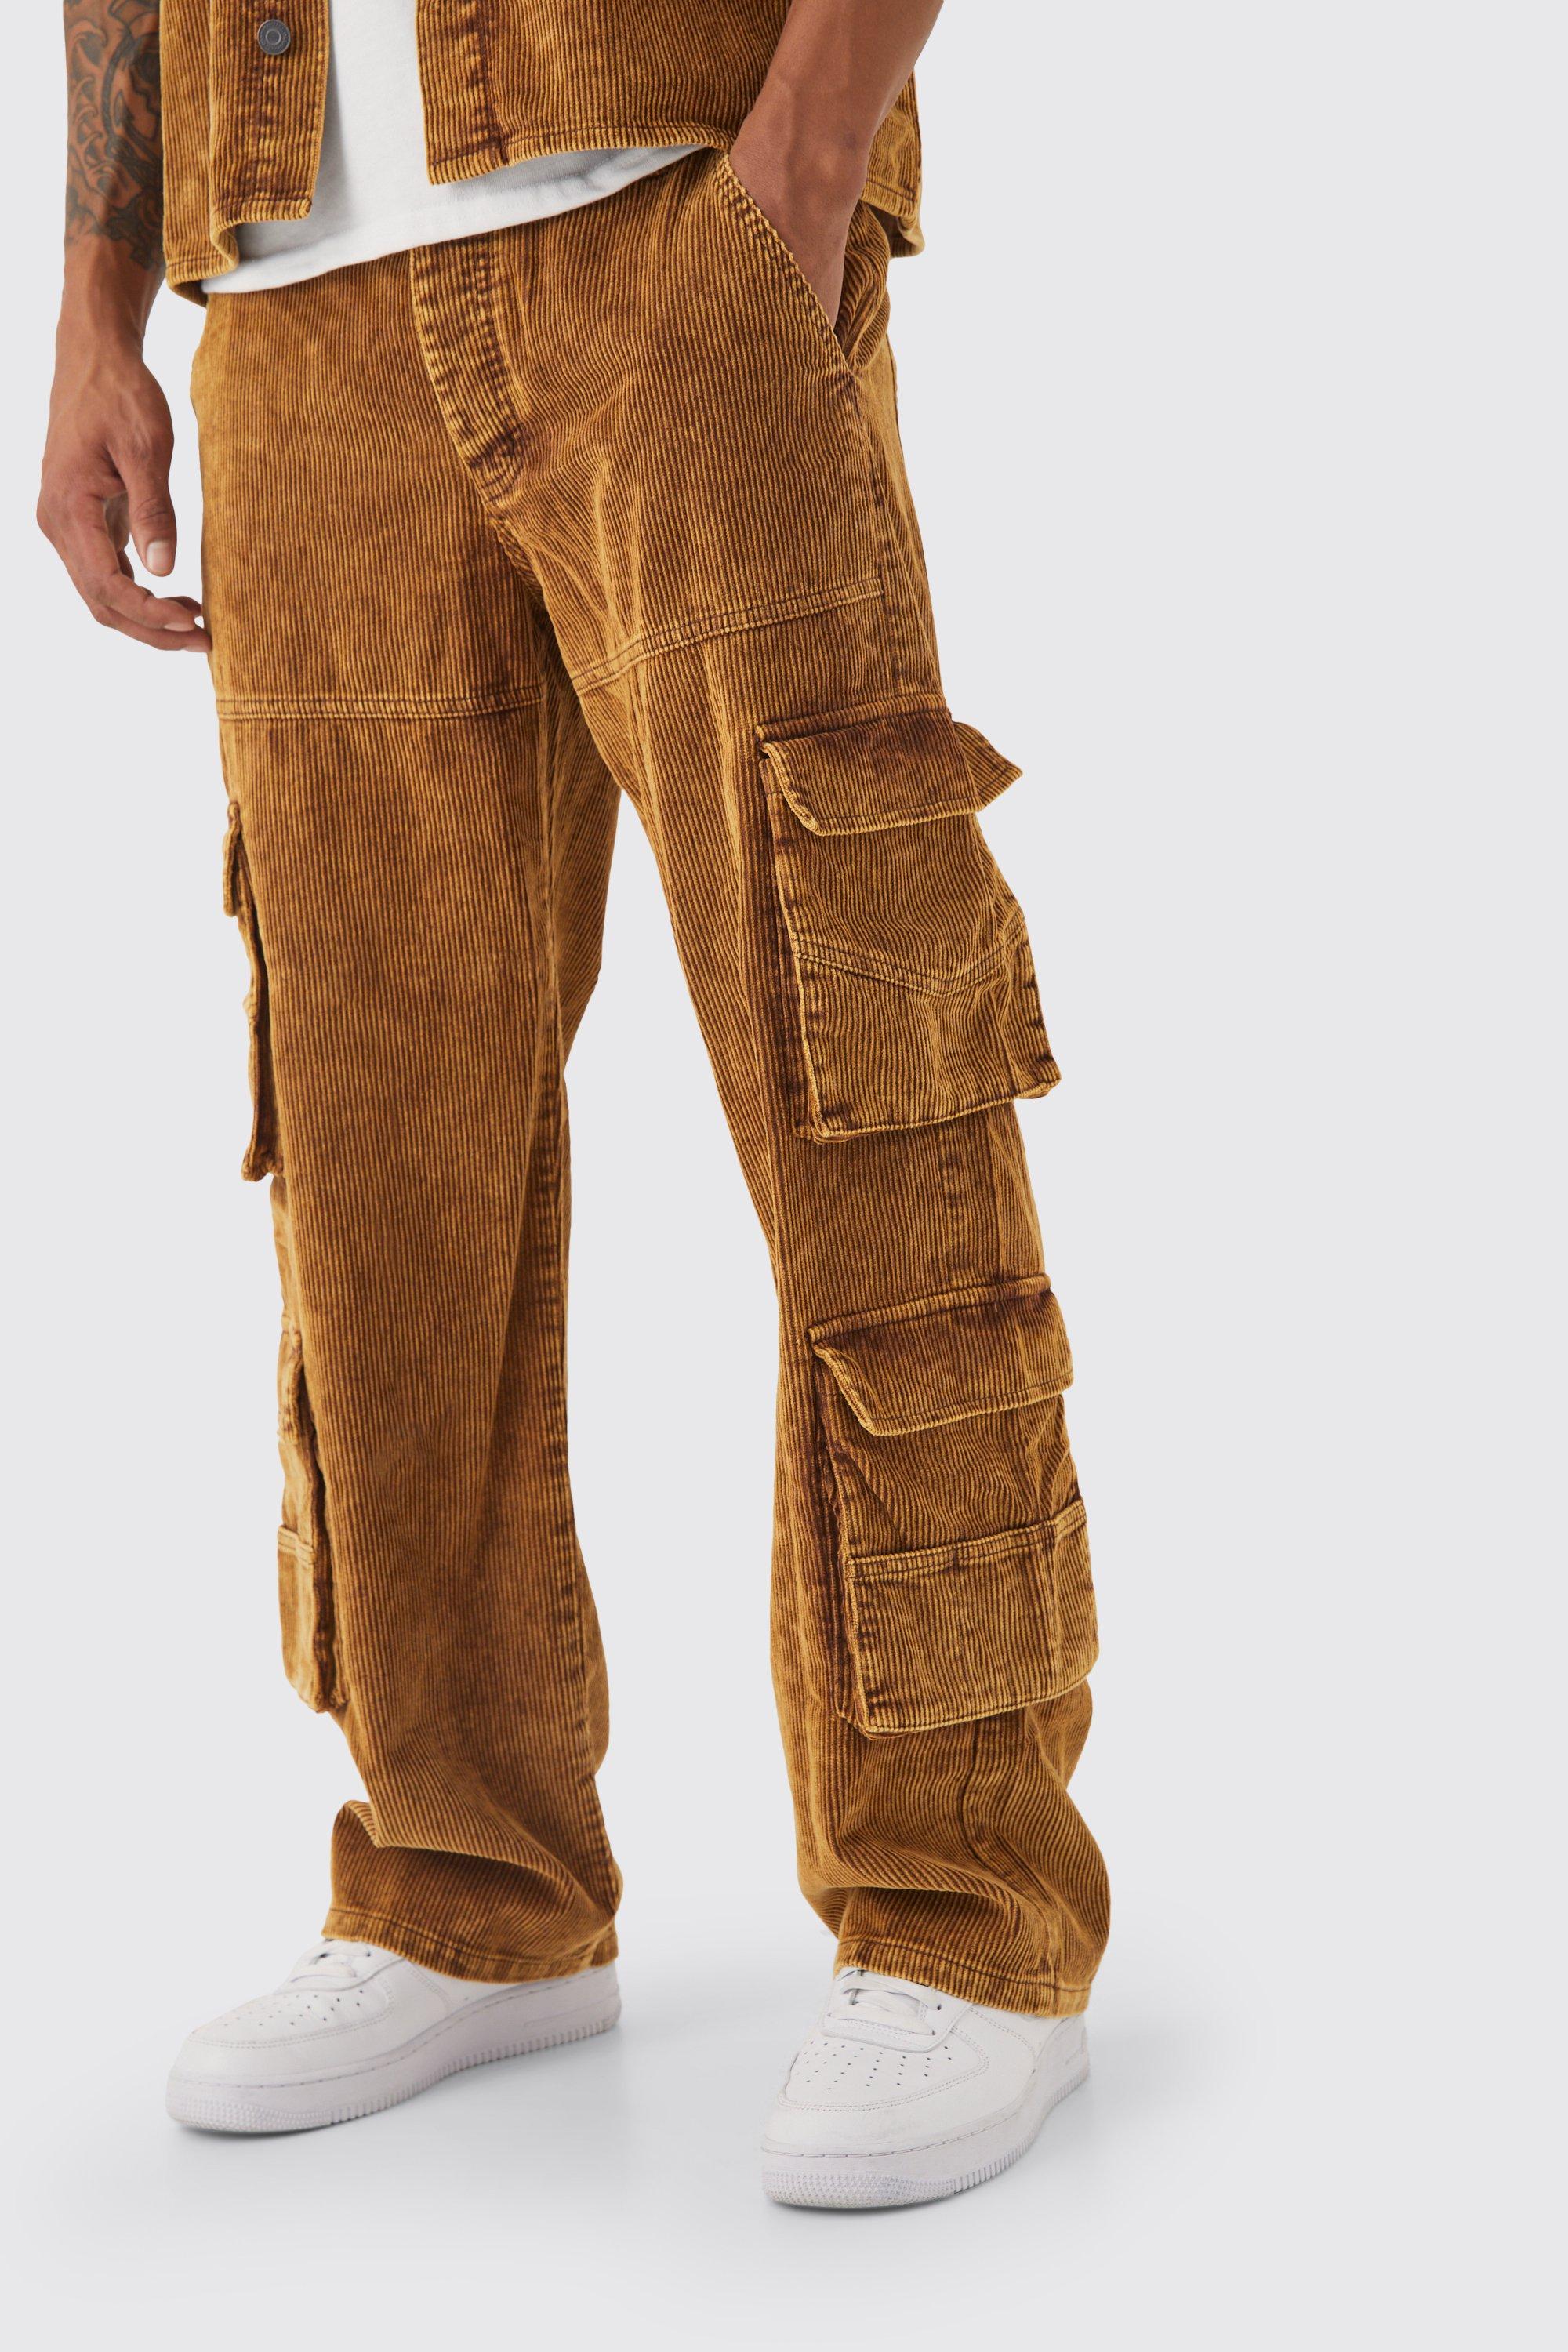 pantalon cargo baggy à poches multiples homme - brun - 28r, brun